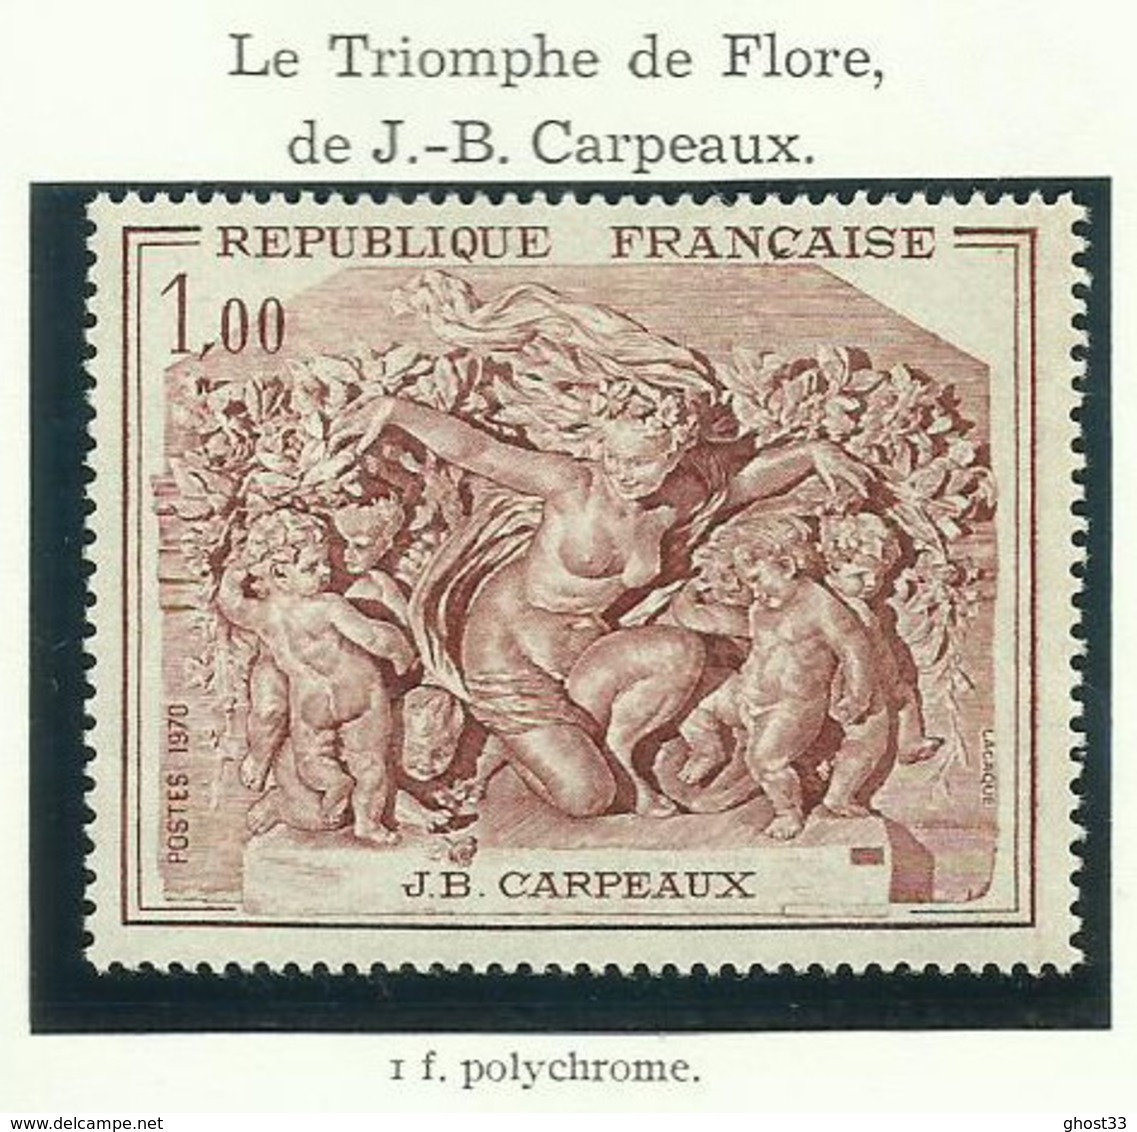 FRANCE - 1970 - LE TRIOMPHE DE FLORE DE J-B CARPEAUX - YT N° 1641 - TIMBRE NEUF** - Neufs